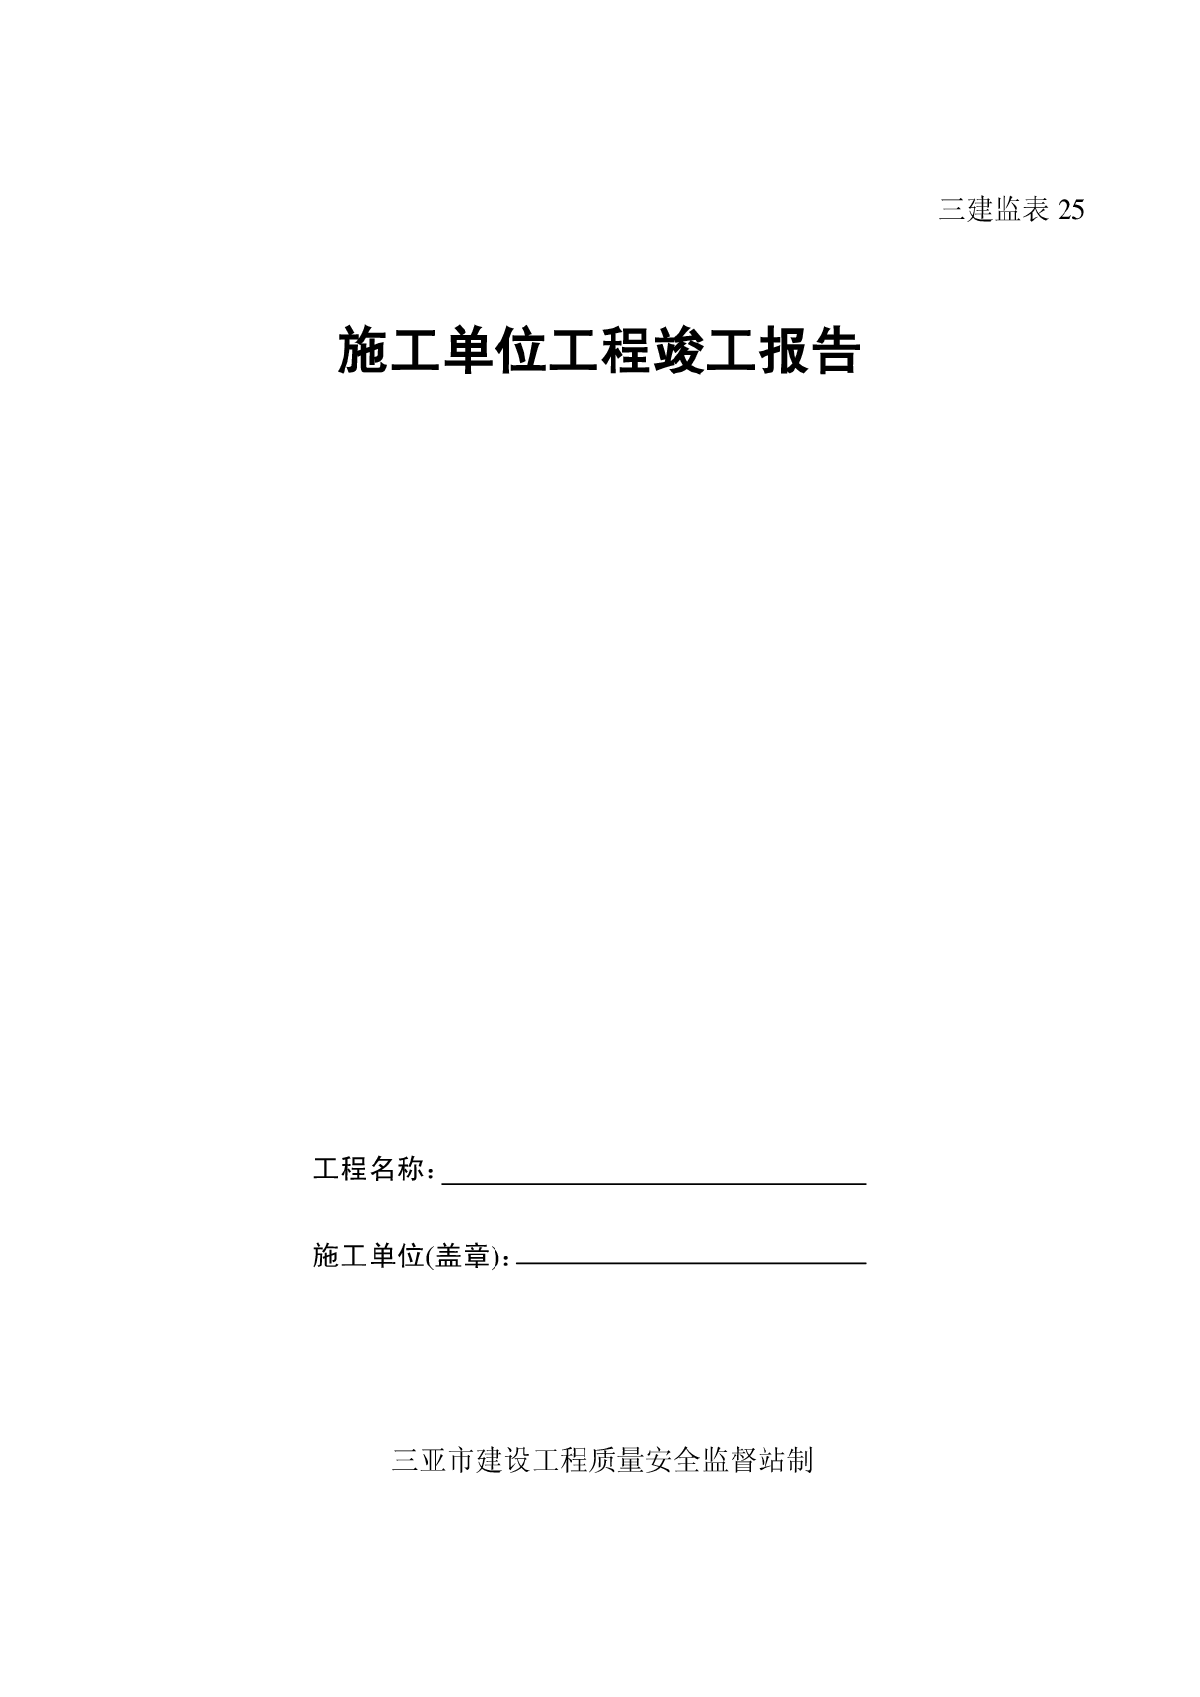 施工单位工程竣工报告.pdf